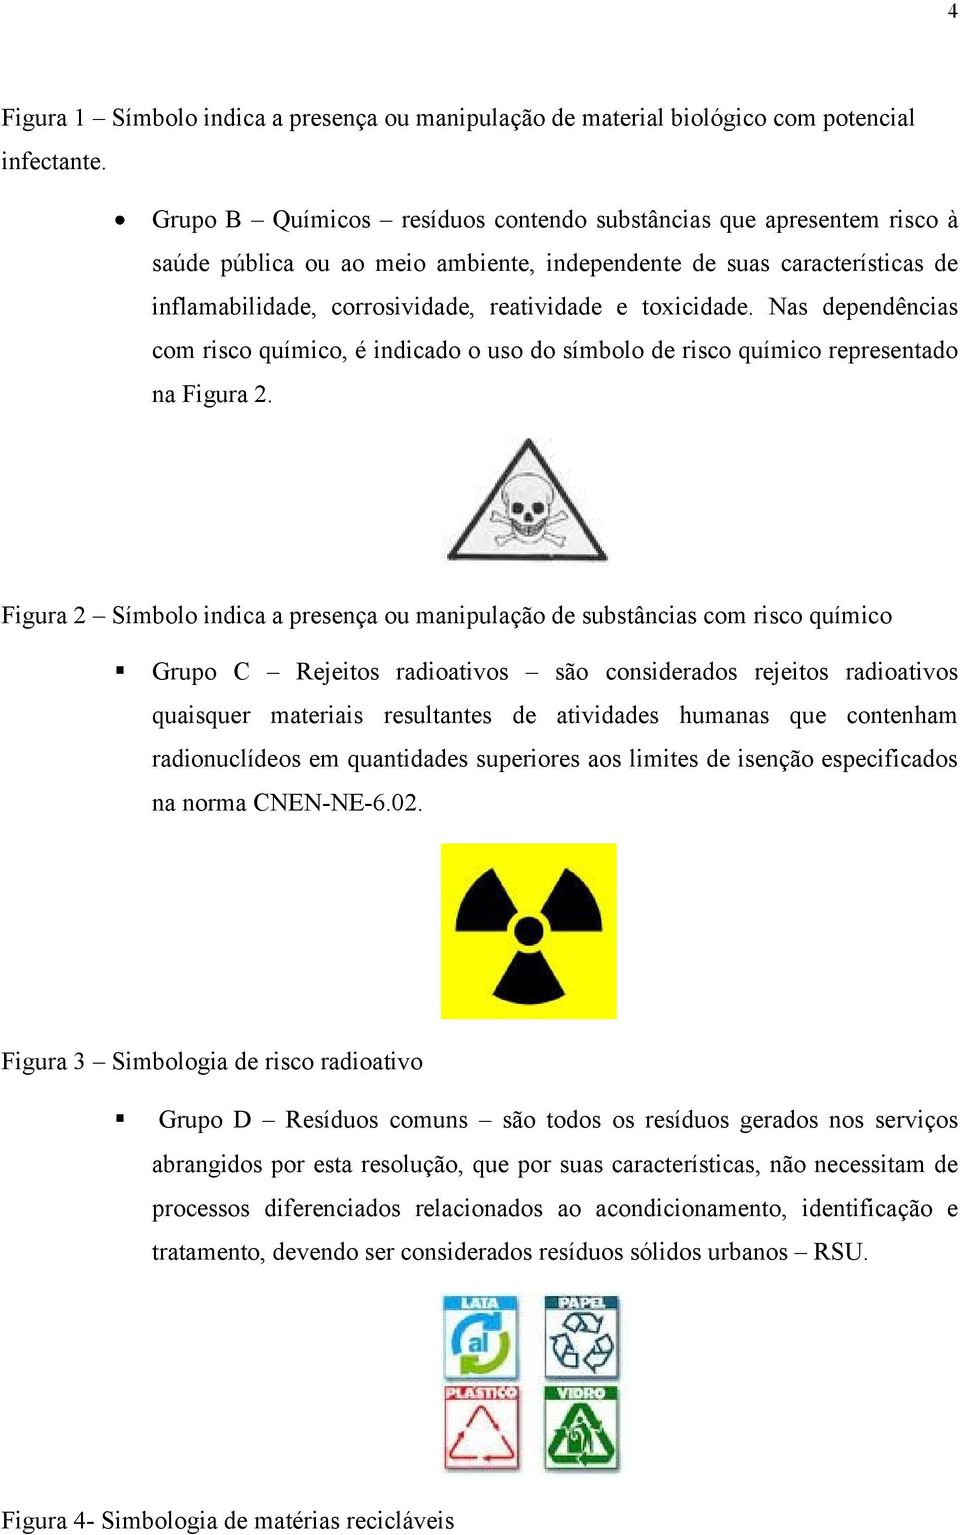 toxicidade. Nas dependências com risco químico, é indicado o uso do símbolo de risco químico representado na Figura 2.